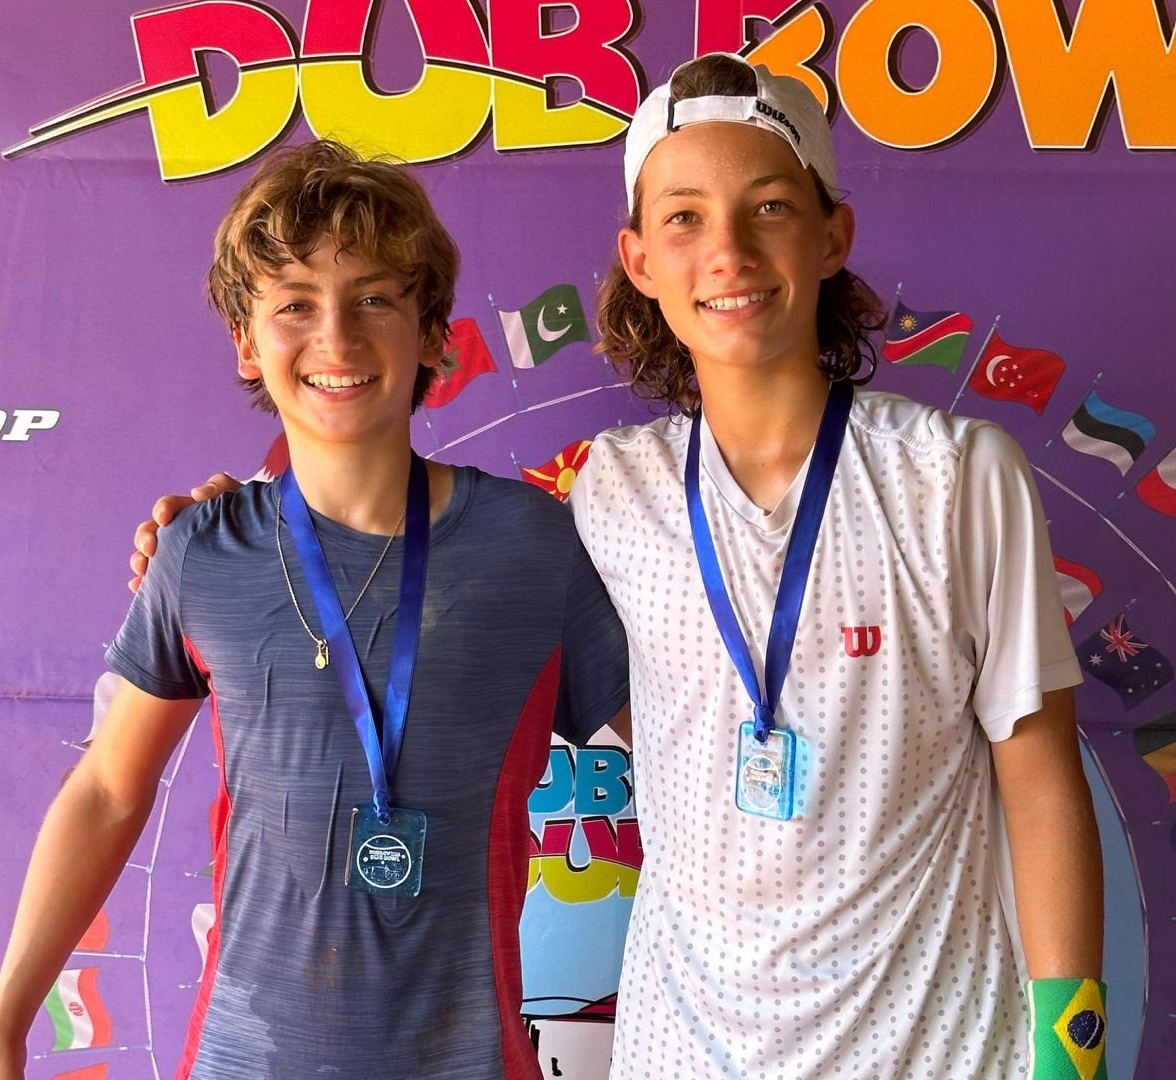 Victor Pignaton, de 13 anos, conquistou o título da 9ª edição do Dubrovnik Dub Bowl, realizado na Croácia, que dá convite para um dos torneios de base mais importantes do mundo